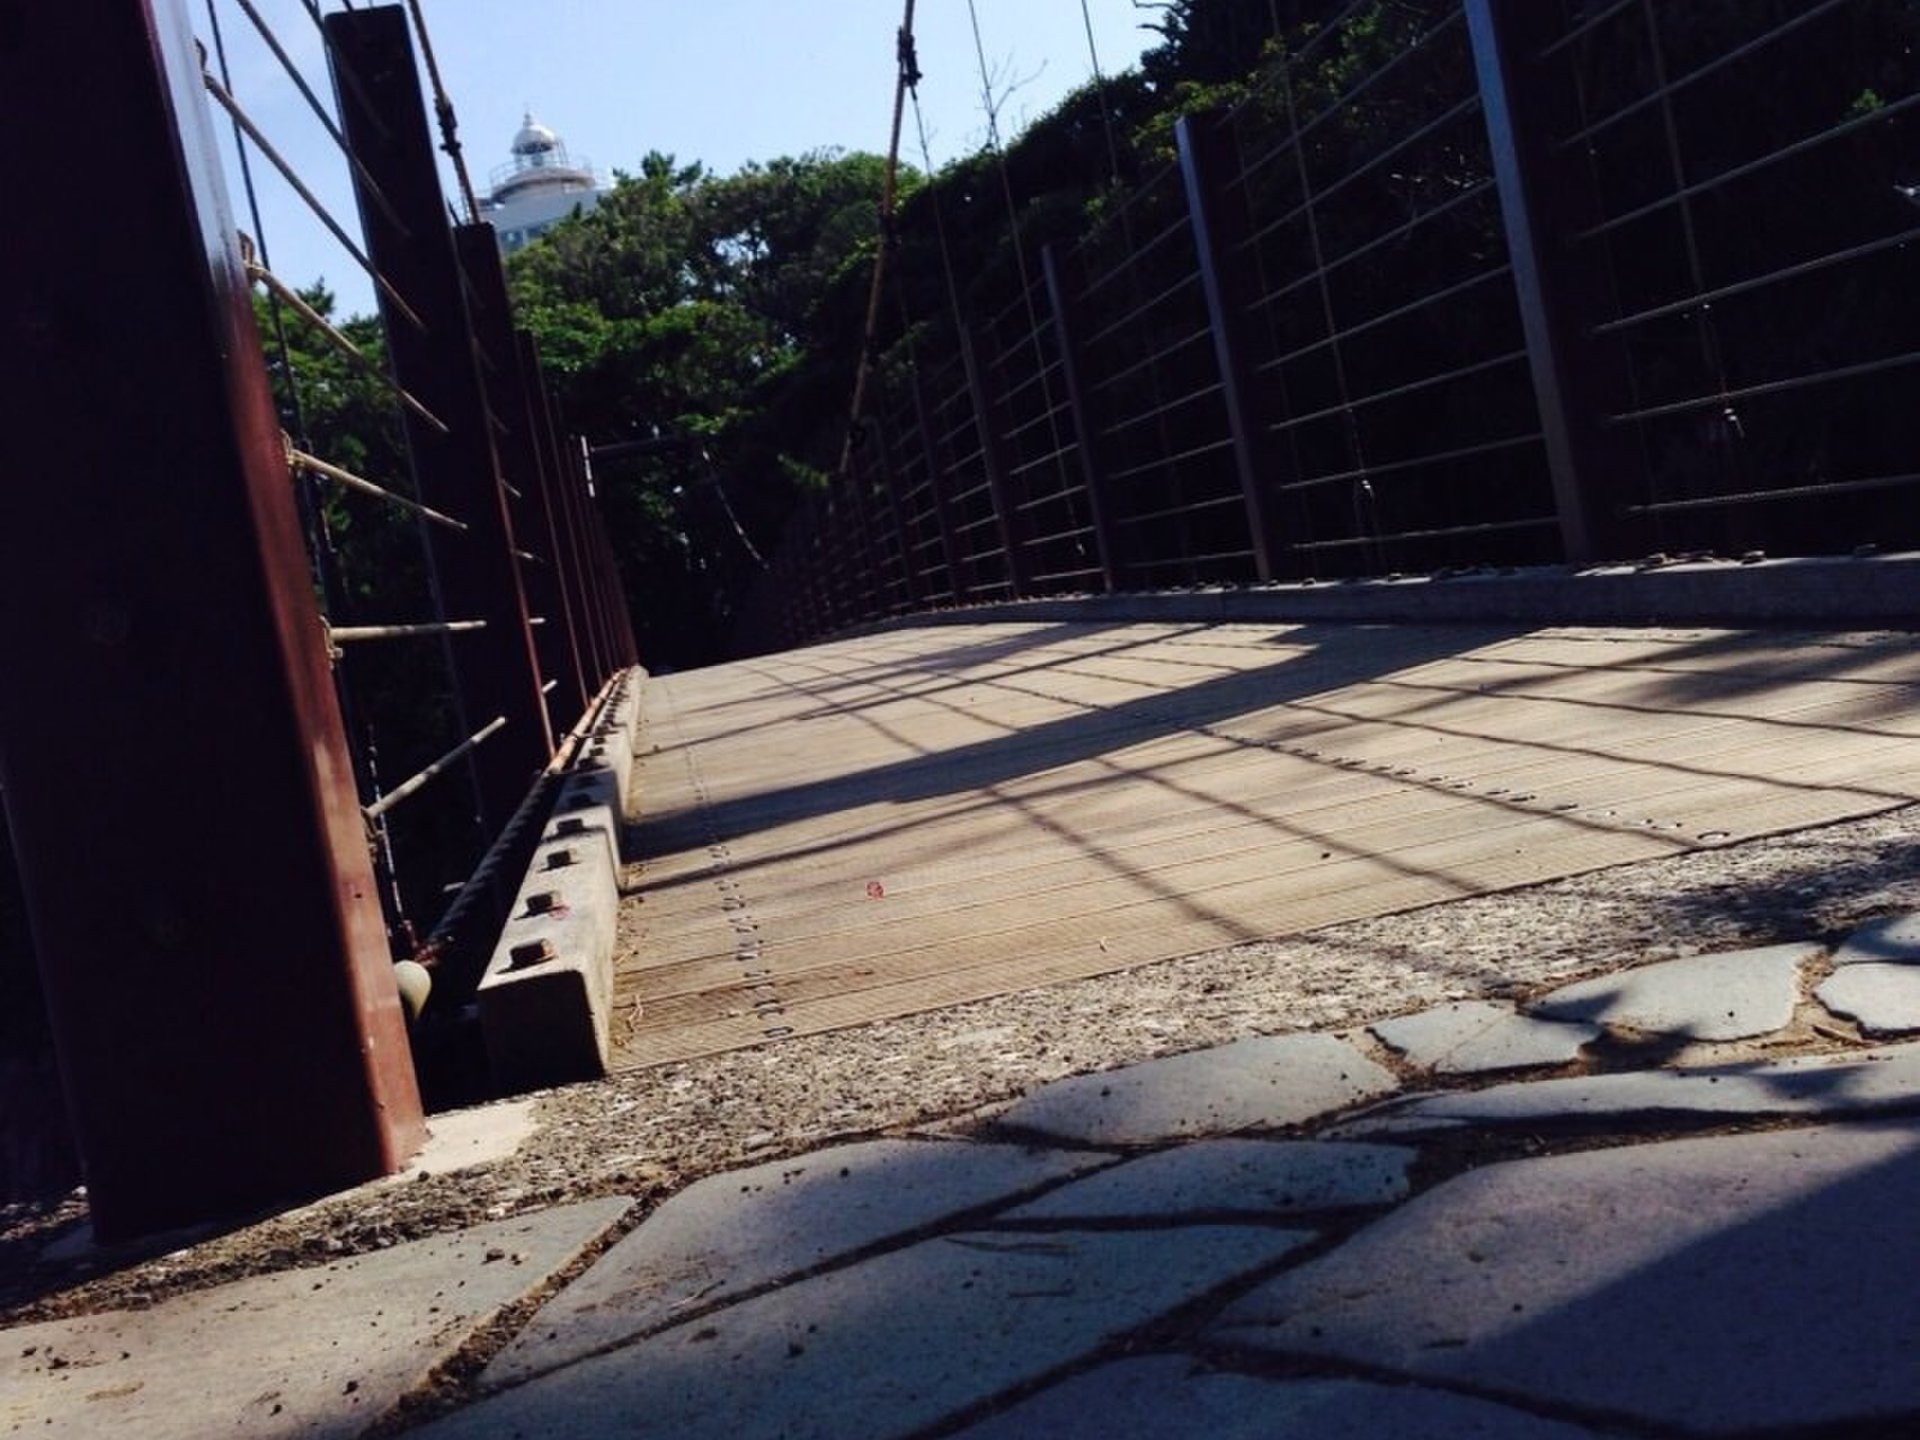 城ヶ崎つり橋 (門脇吊橋)